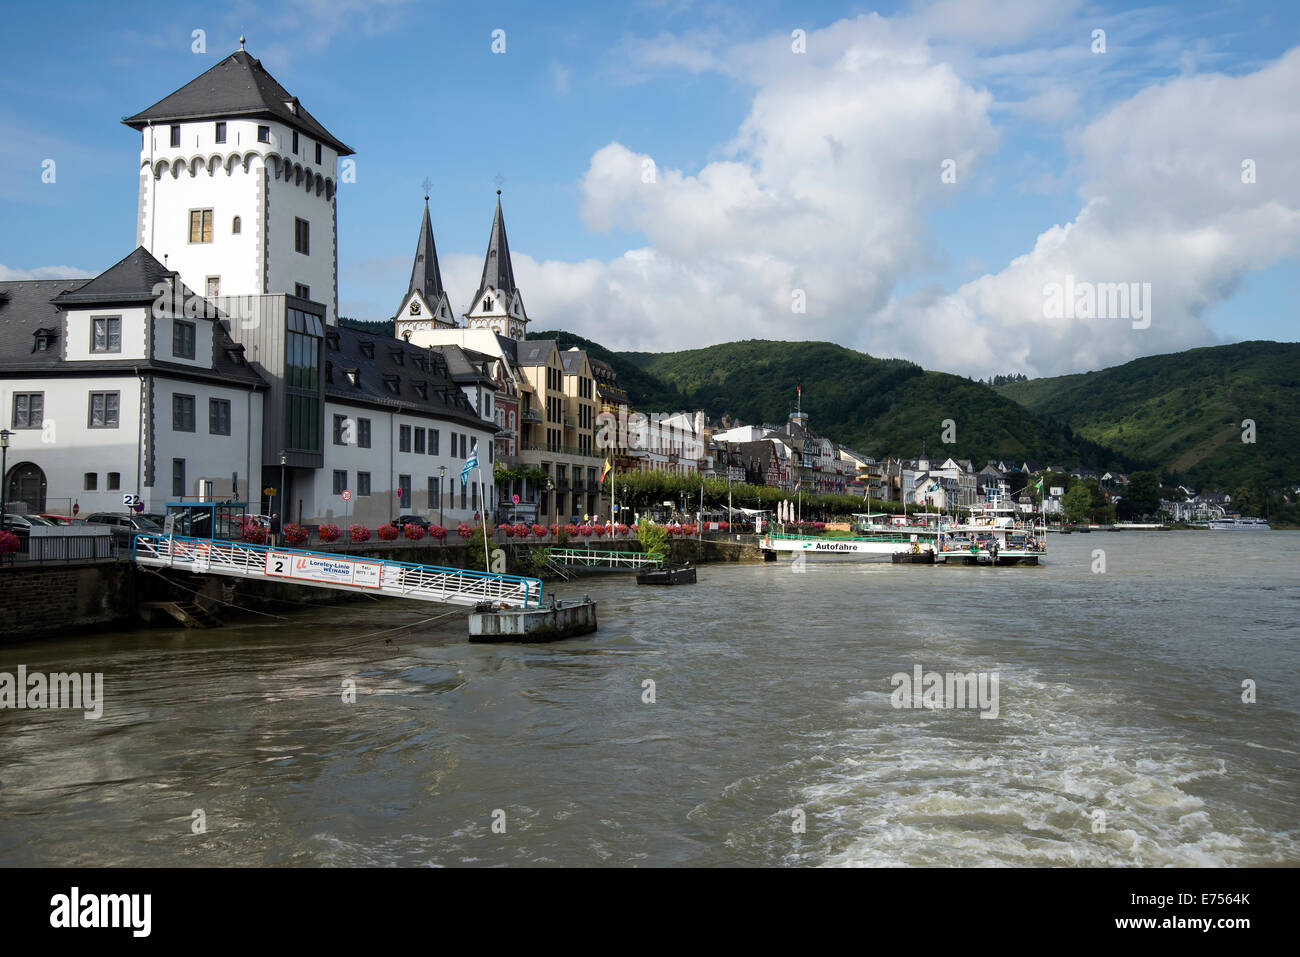 Pier für Loreley-Linie Weinand Rhein River Cruises, Boppard, Rheinallee, das romantische Rheintal, Deutschland, Europa Stockfoto